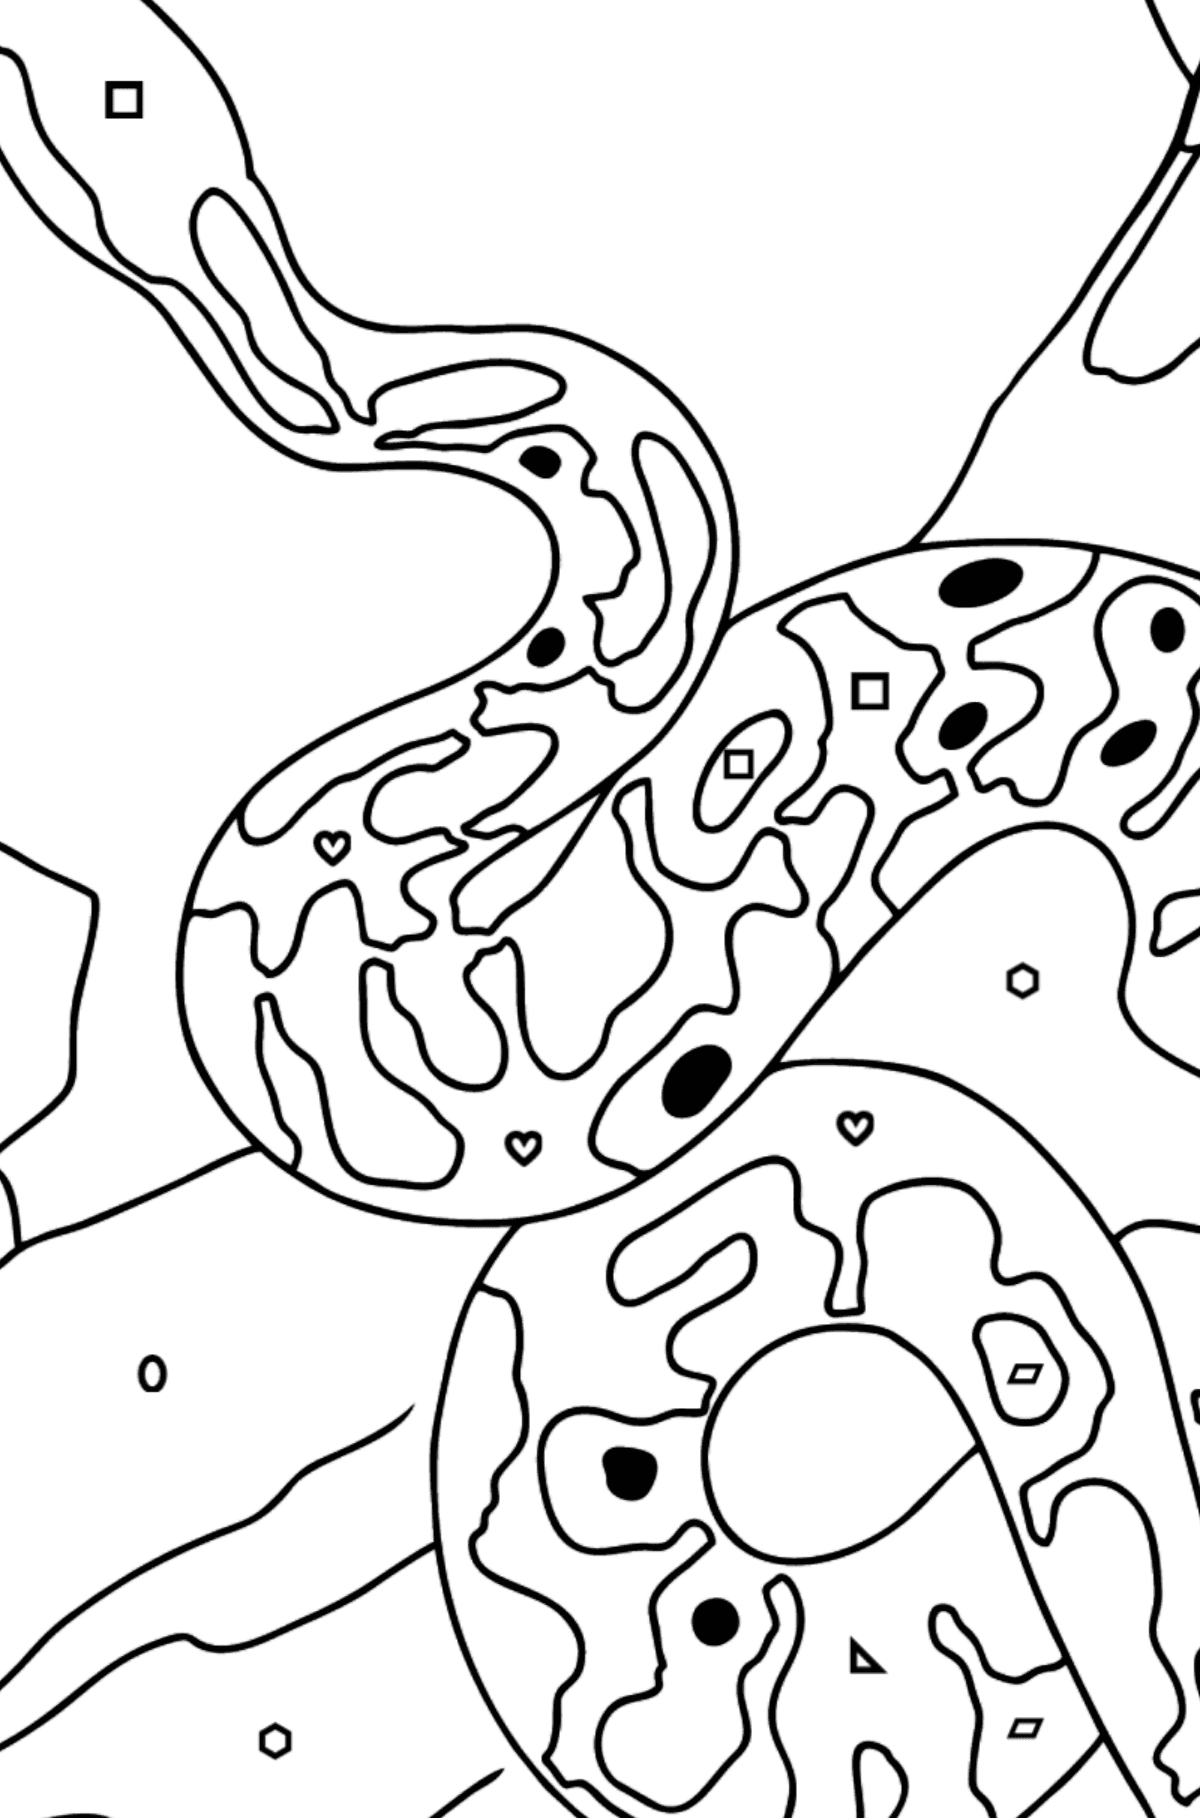 Tegning til farvning slange - Farvelægning af geometriske figurer for børn